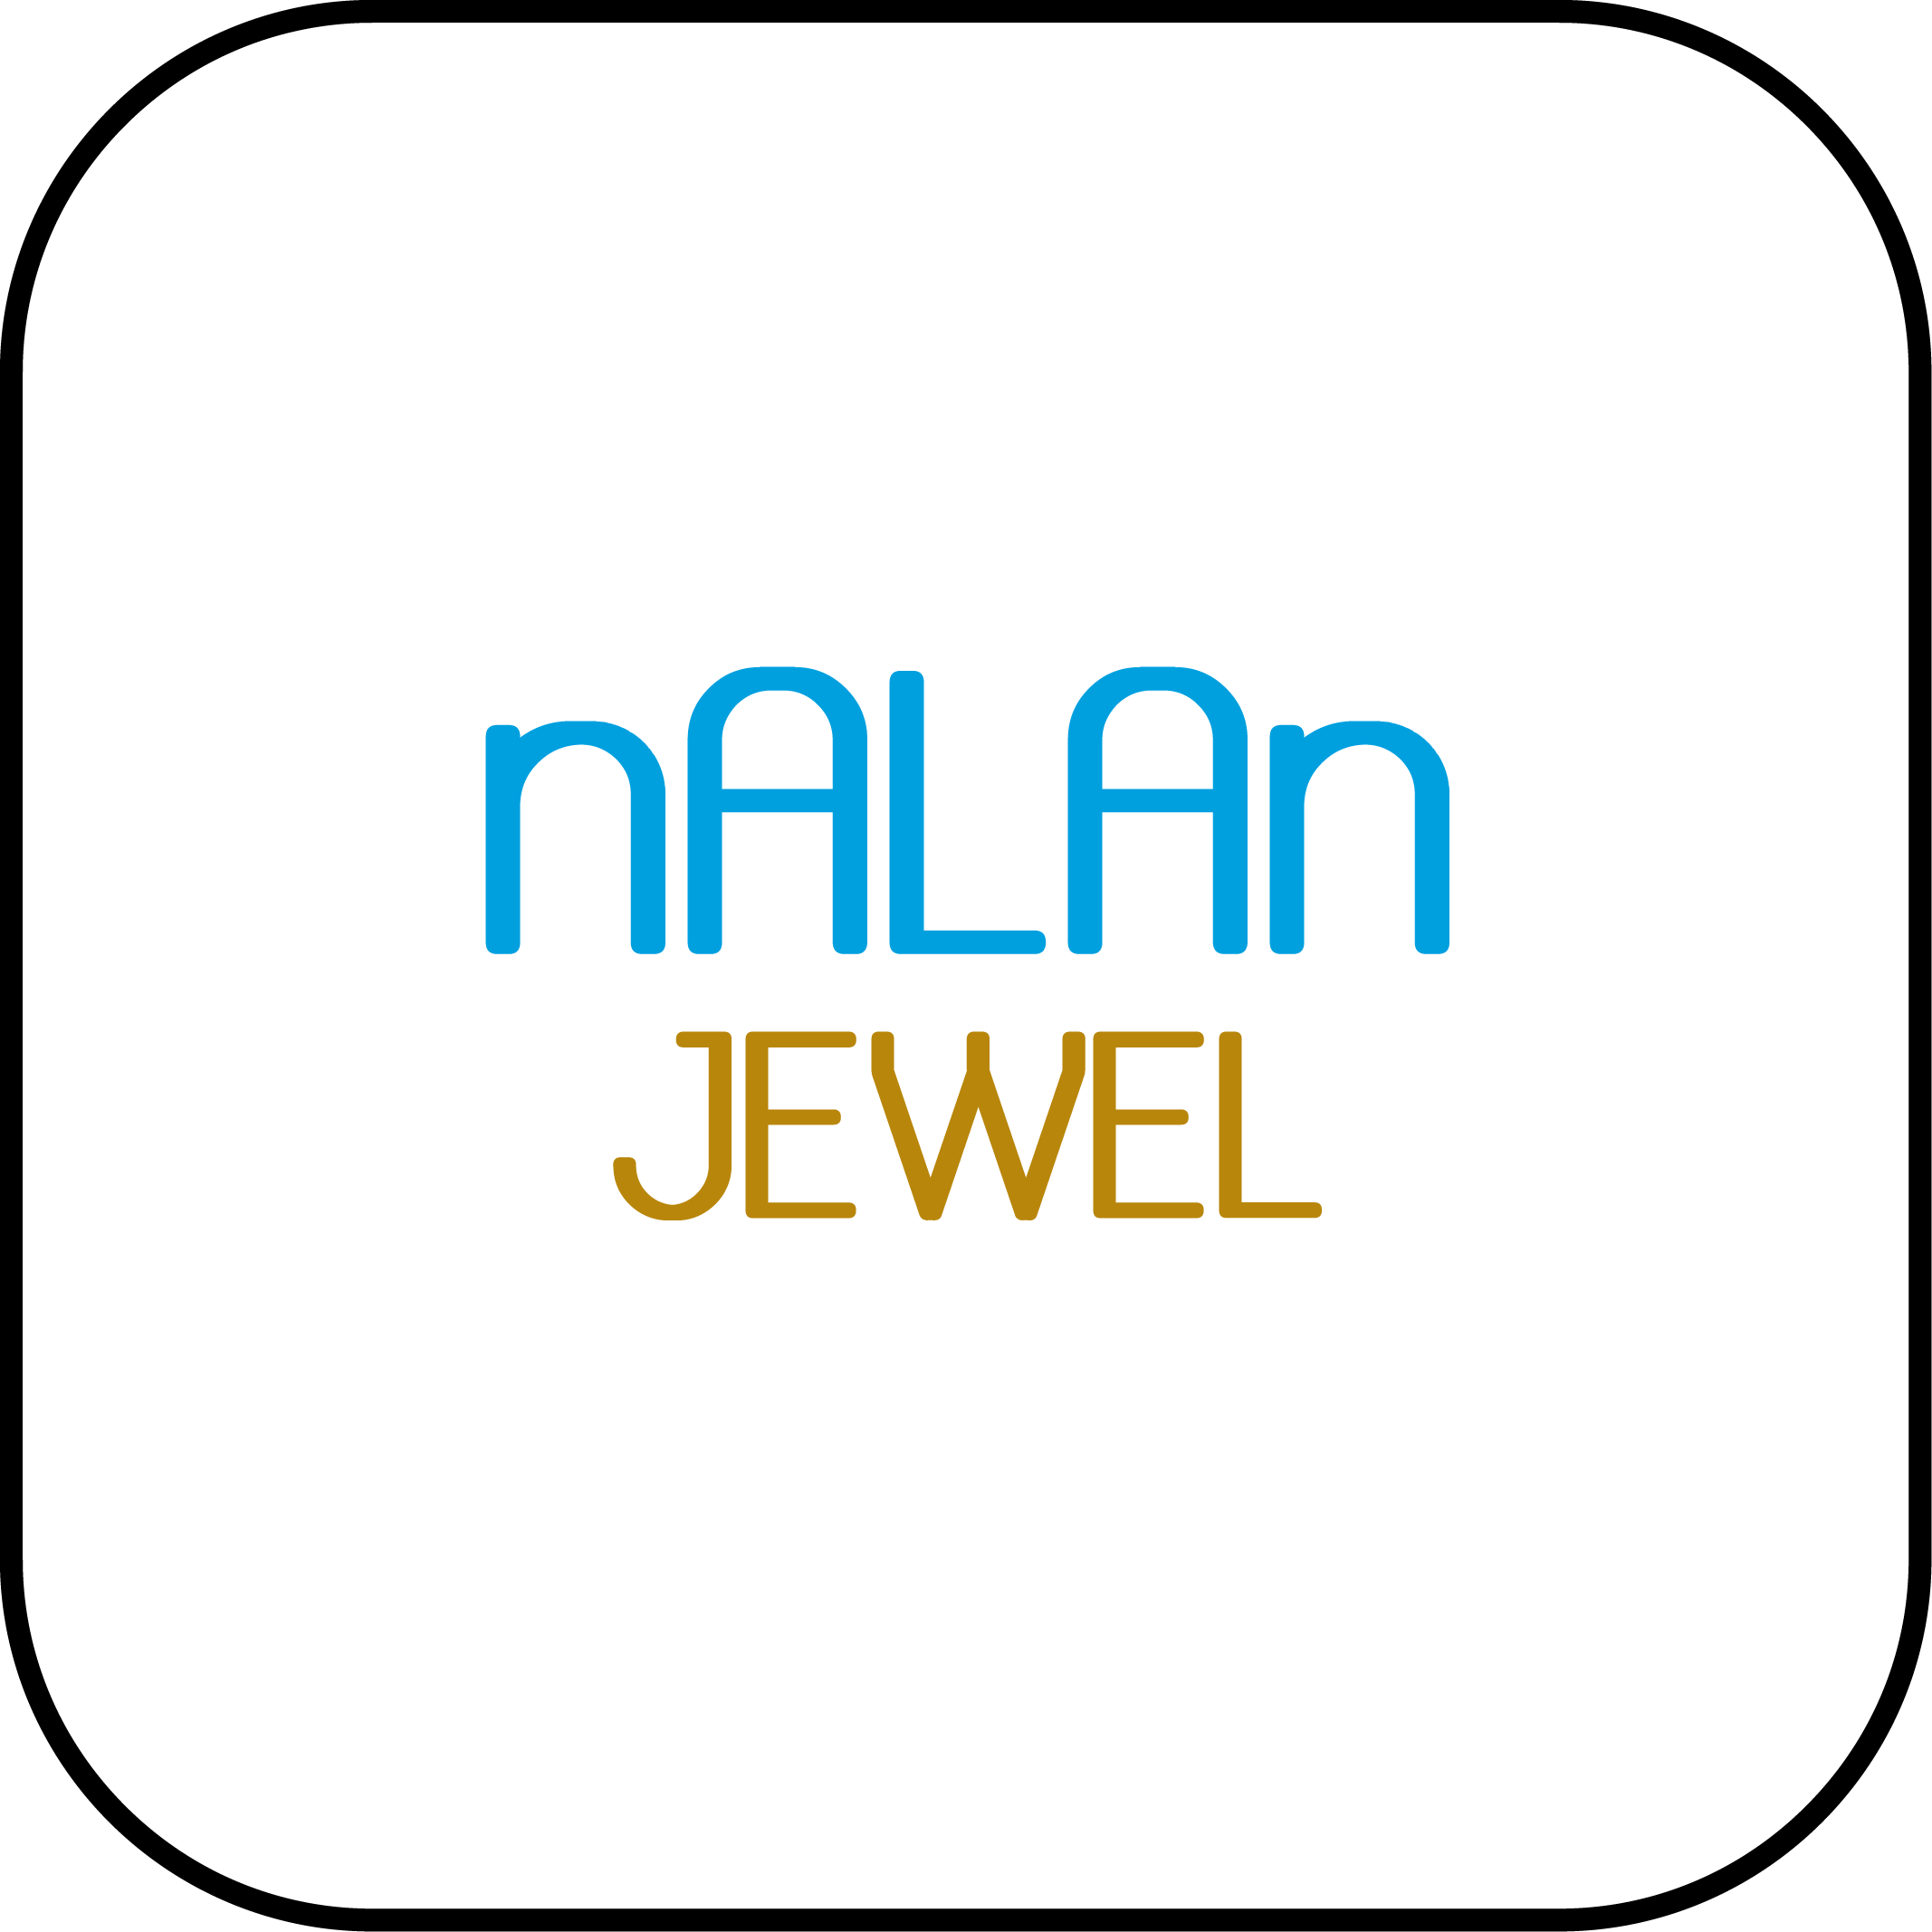 Nalan Jewel Logo